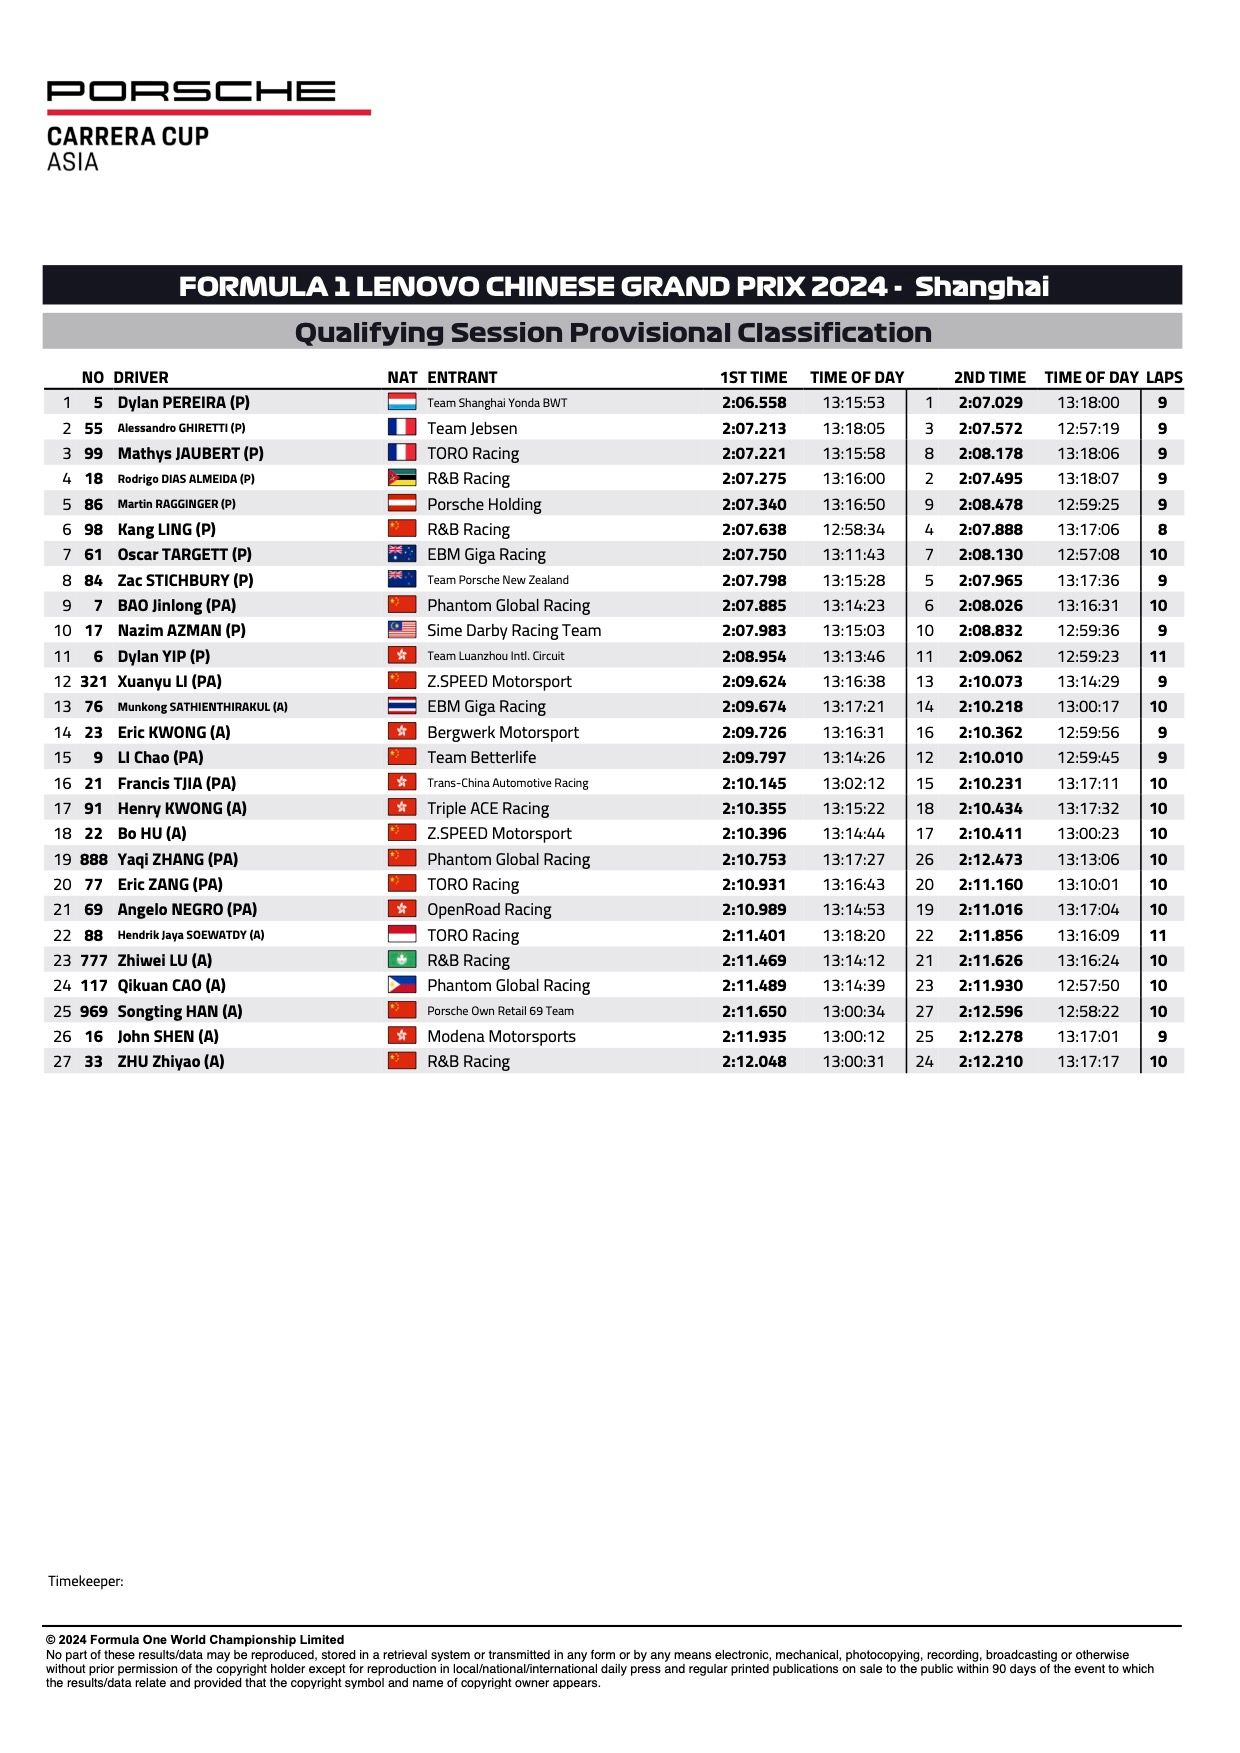 Risultati provvisori di qualificazione dei round 1 e 2 della Porsche Carrera Cup Asia 2024 Shanghai